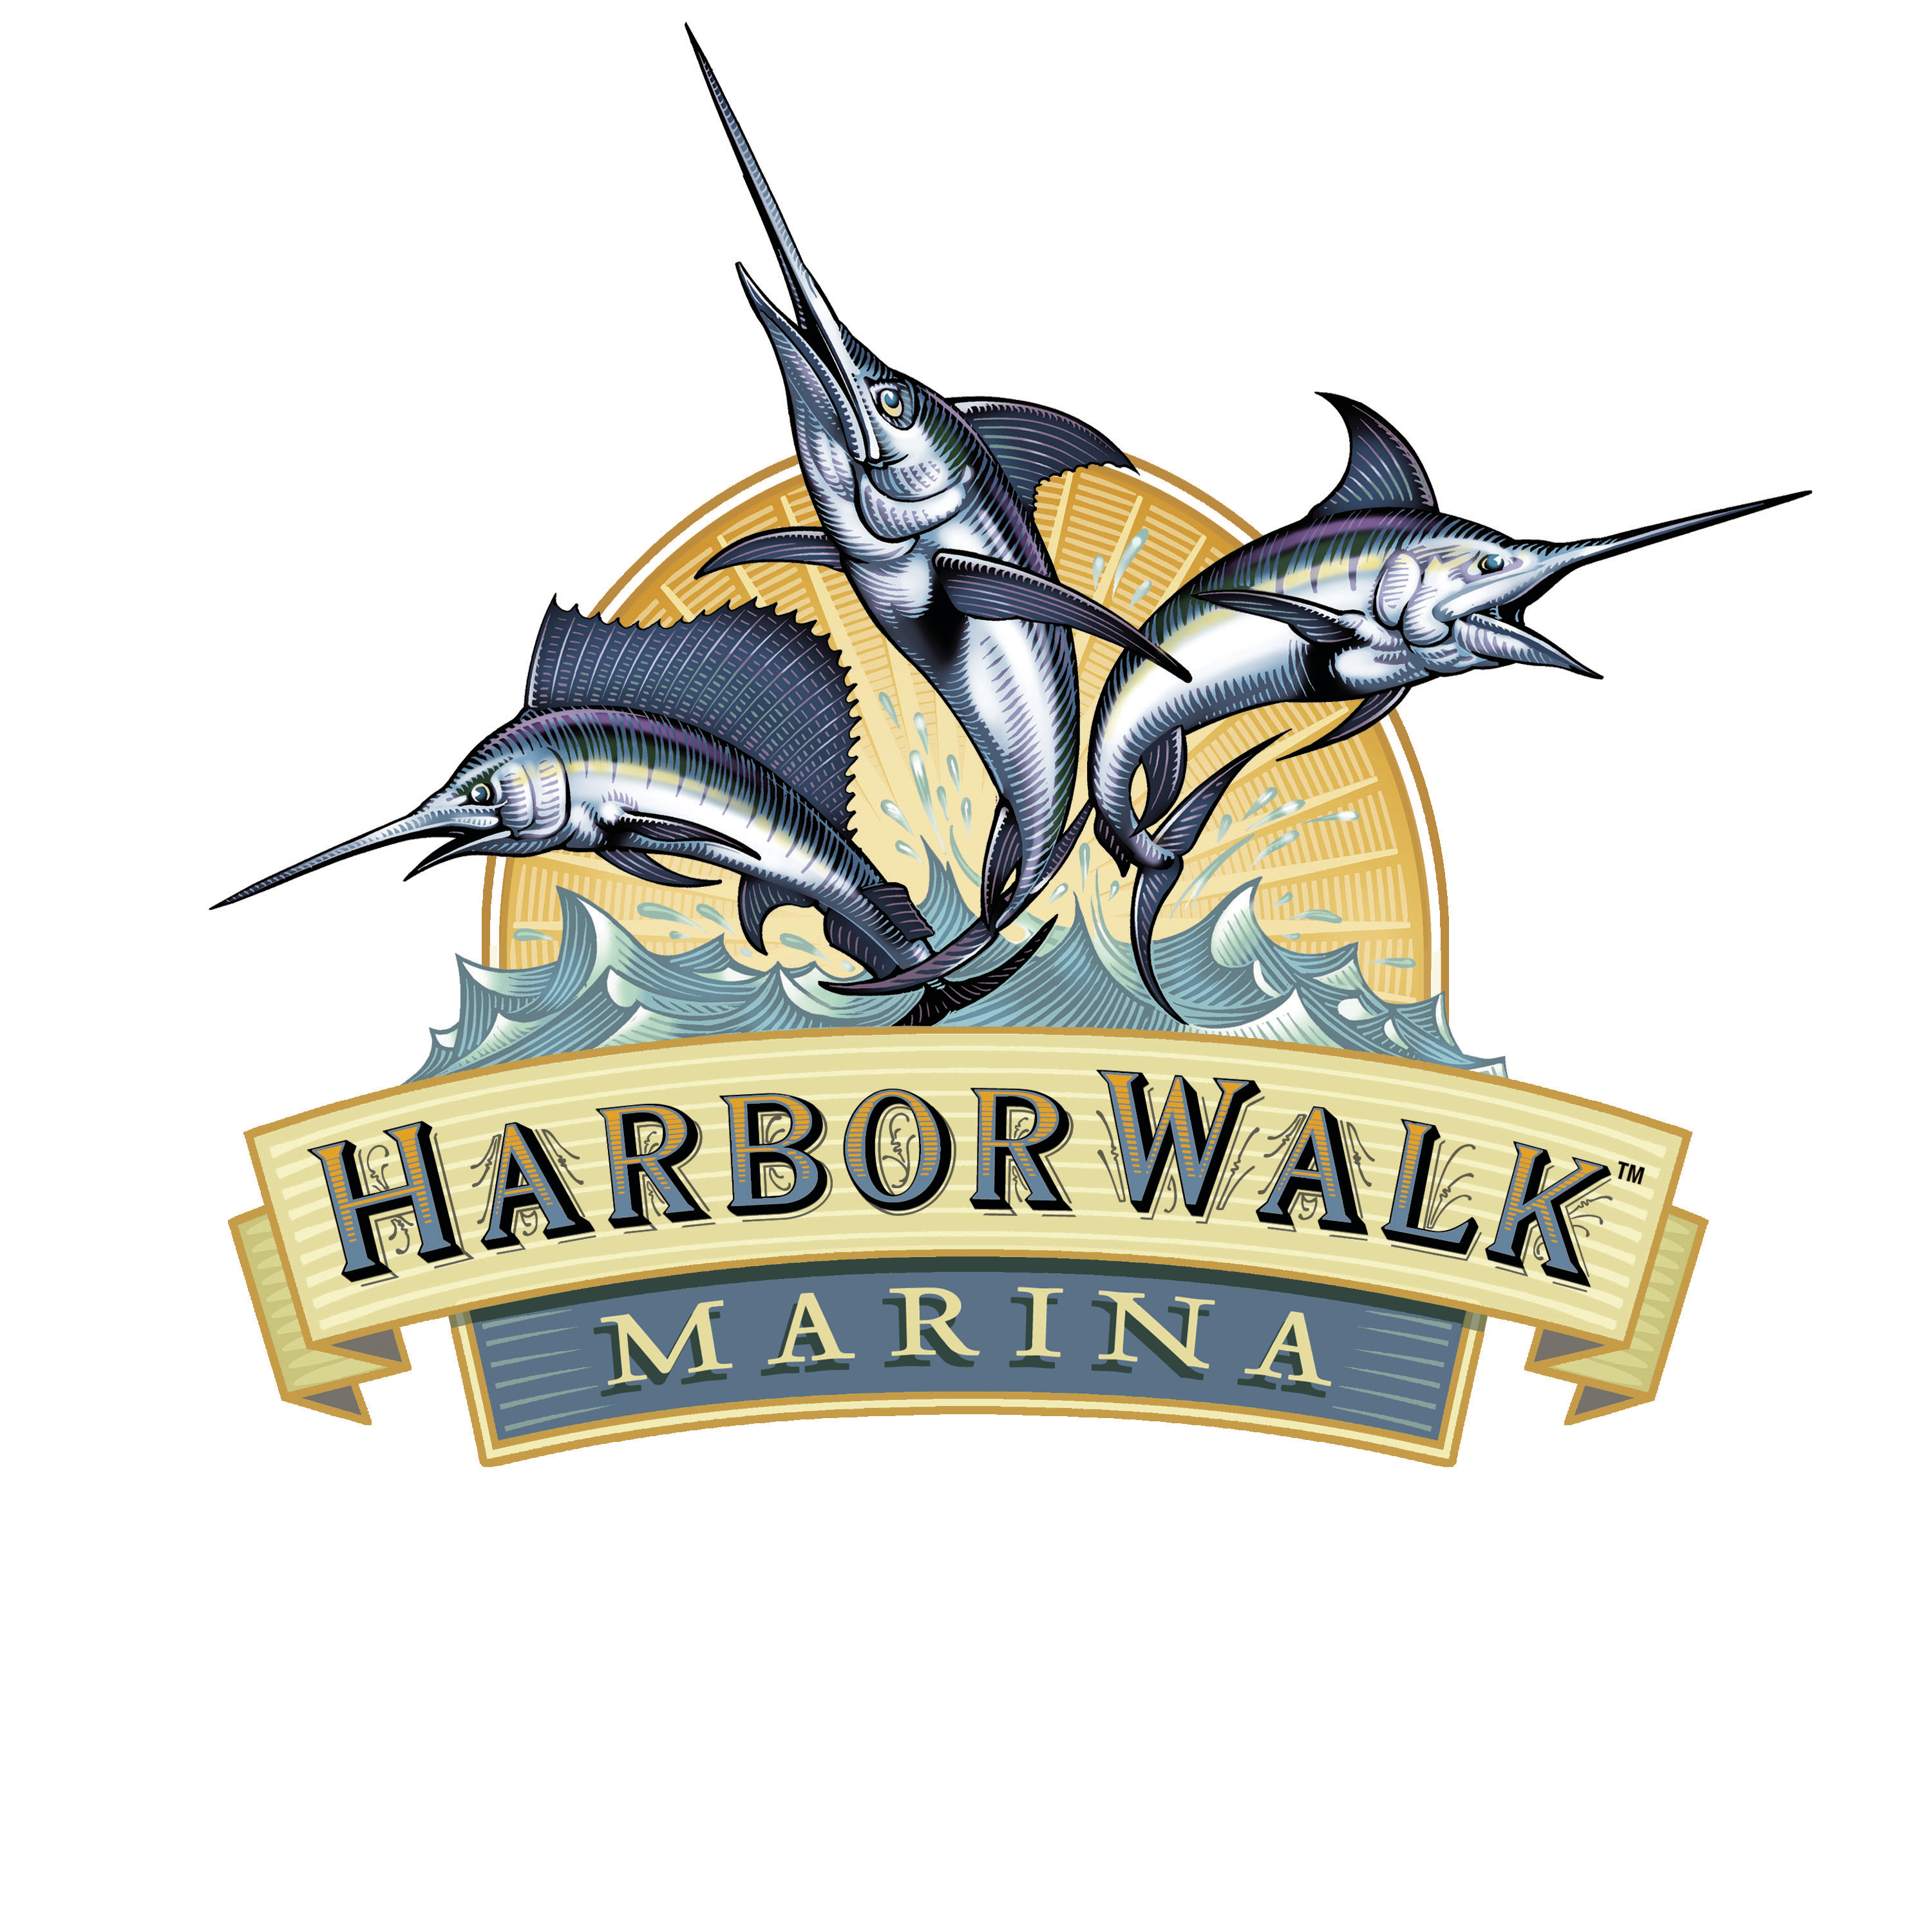 HarborWalk Marina Coupons near me in Destin, FL 32541 ...